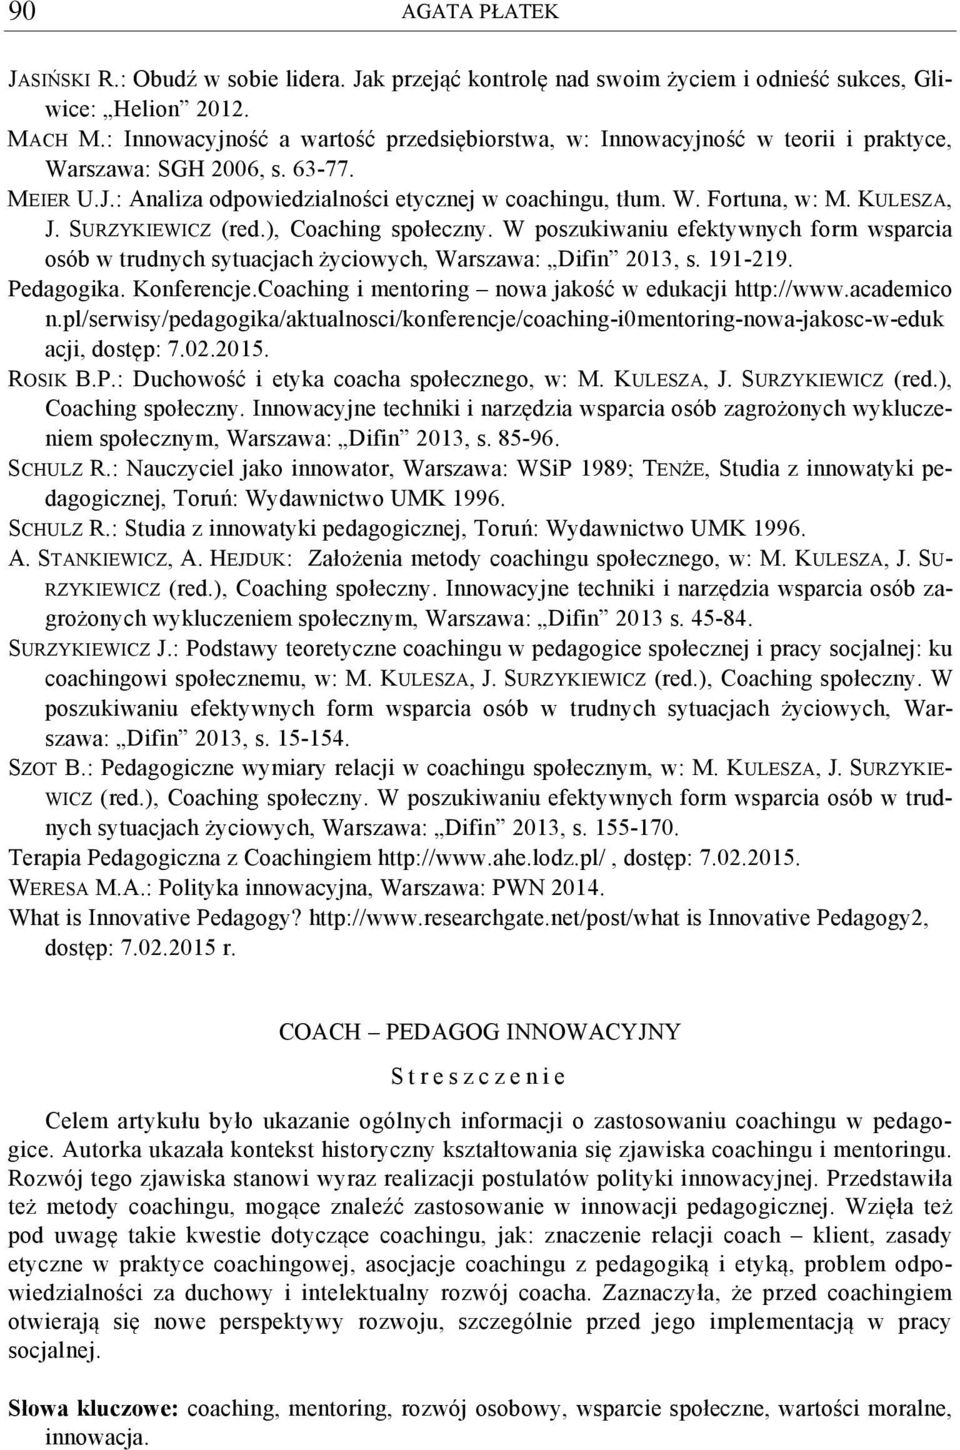 KULESZA, J. SURZYKIEWICZ (red.), Coaching społeczny. W poszukiwaniu efektywnych form wsparcia osób w trudnych sytuacjach życiowych, Warszawa: Difin 2013, s. 191-219. Pedagogika. Konferencje.